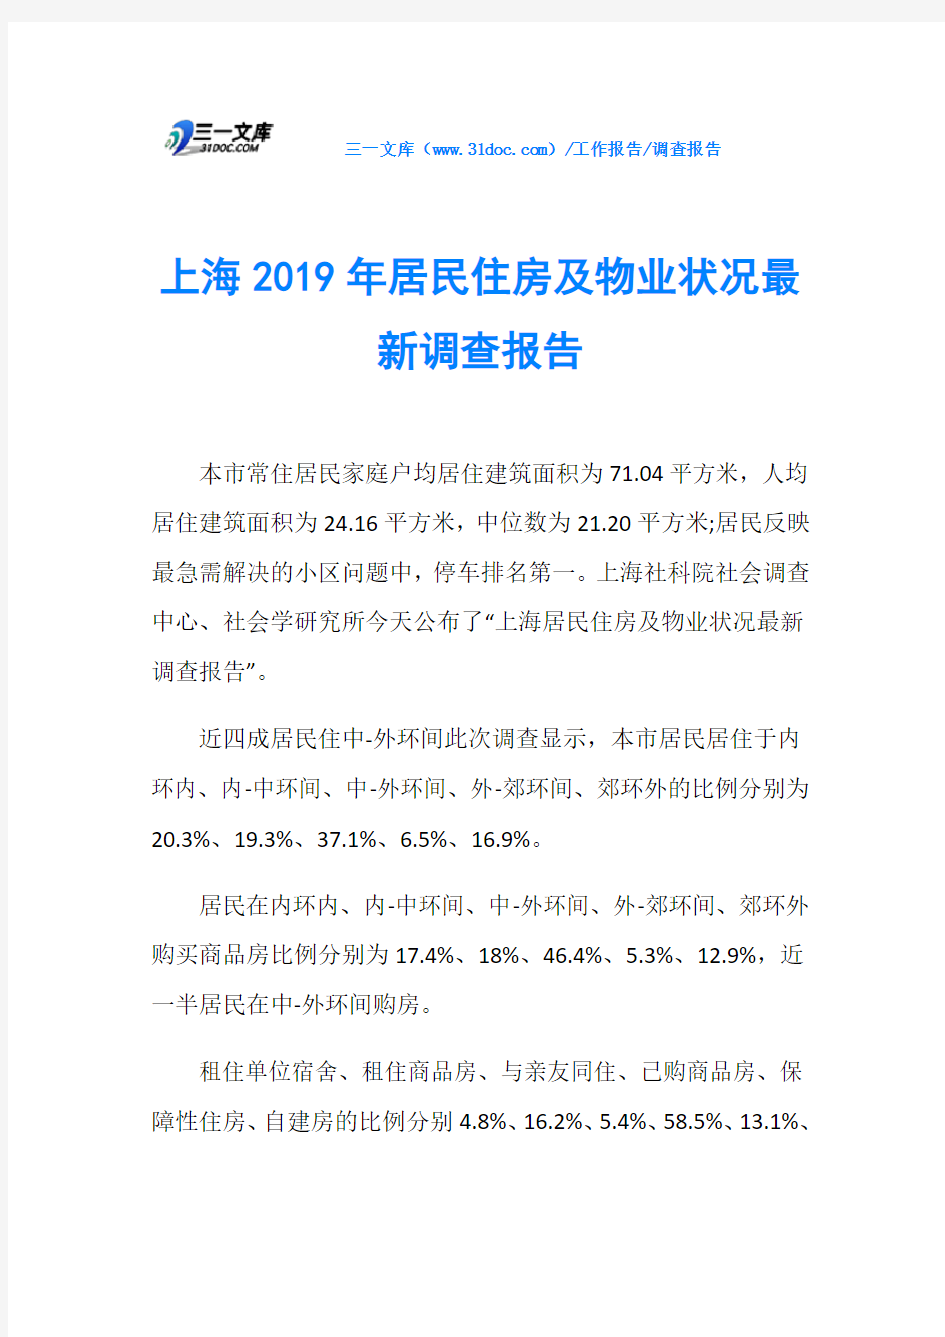 上海2019年居民住房及物业状况最新调查报告